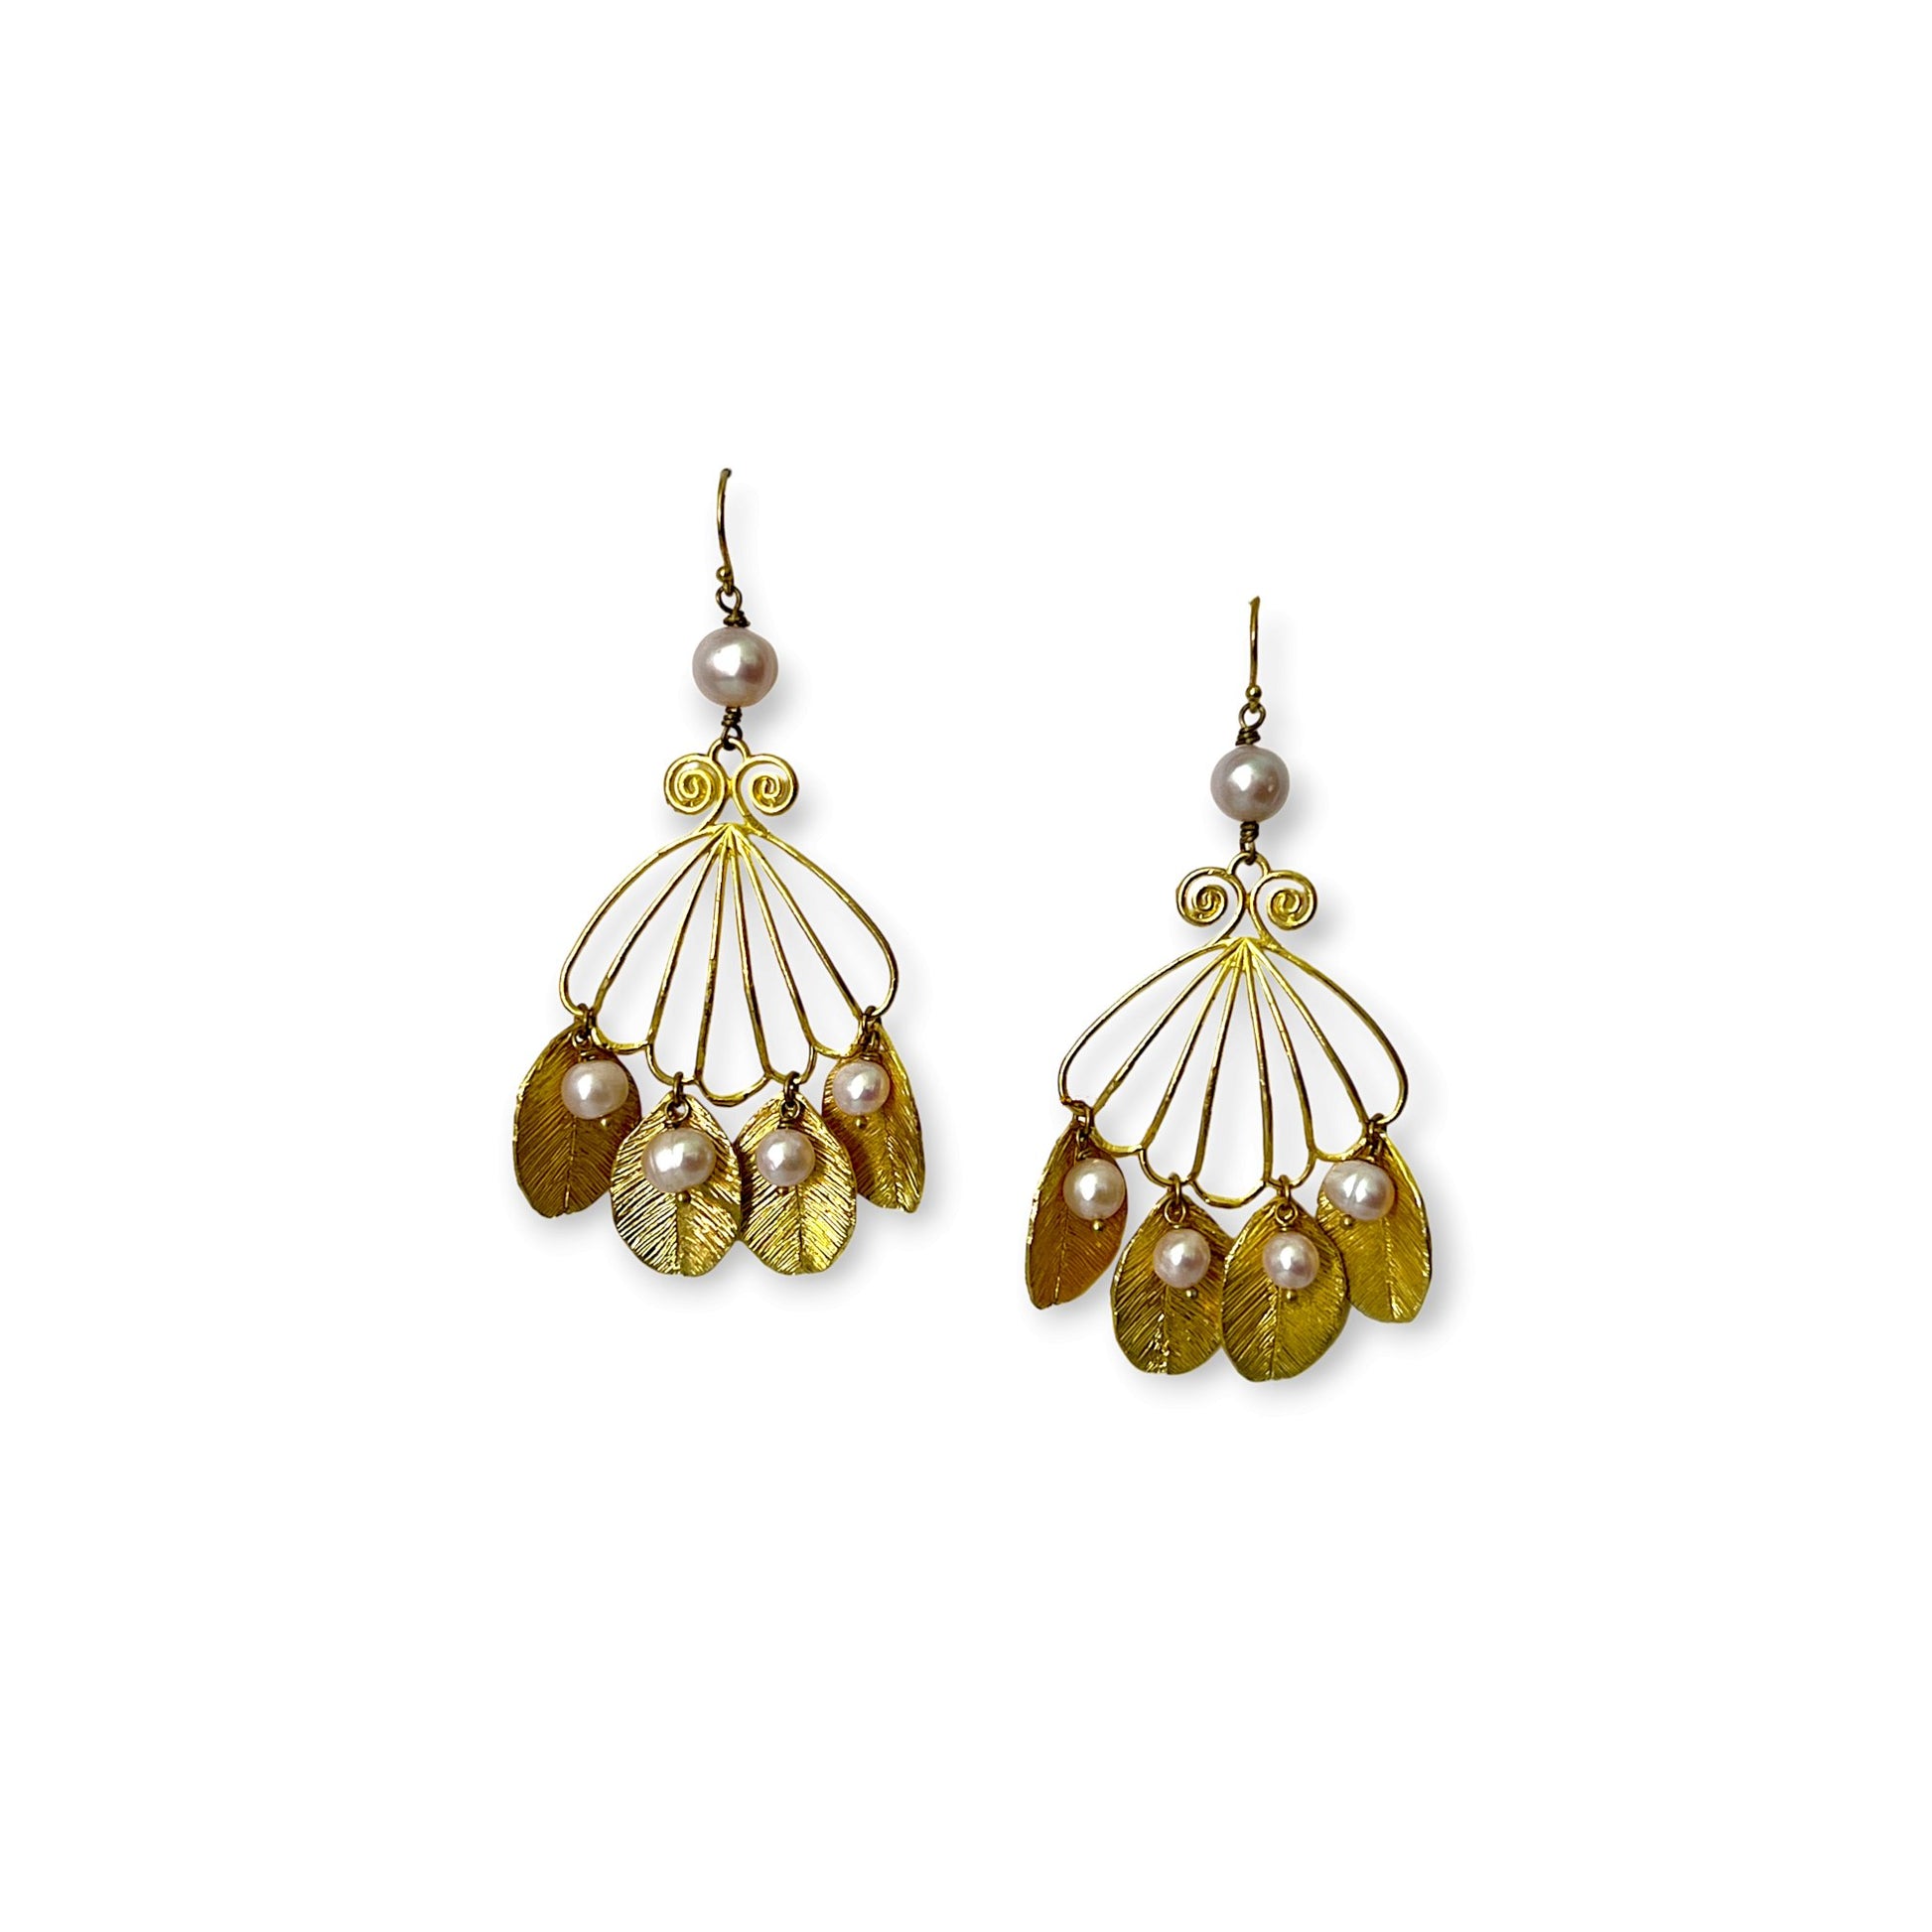 Botanic fan of pearls drop statement earrings - Sundara Joon